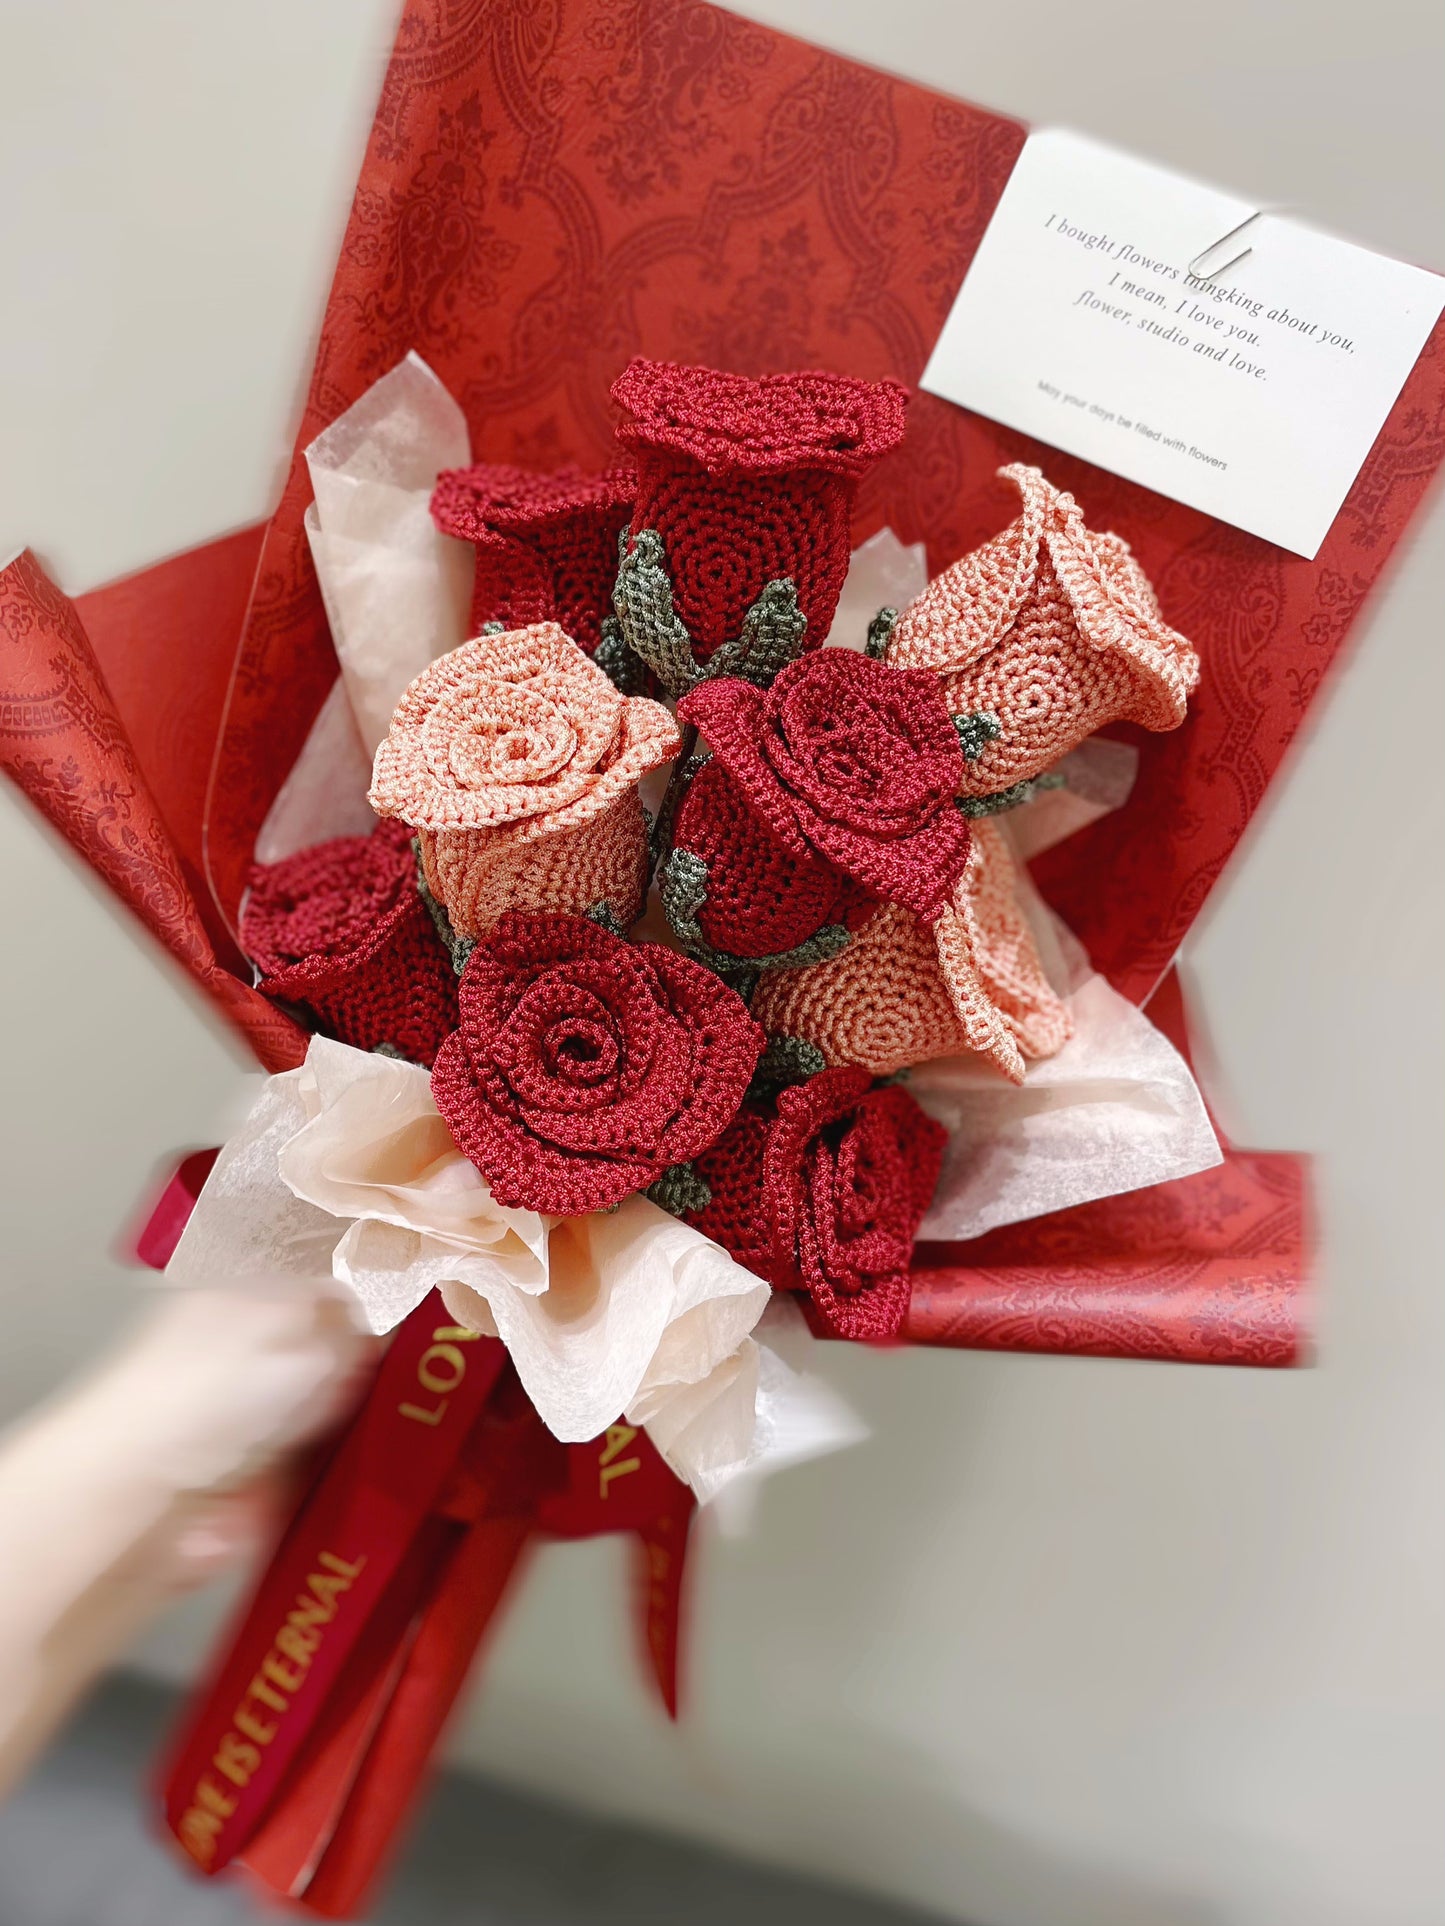 Altamente recomendado| Ramo de rosas de ganchillo, regalo para novia/amiga/mamá, regalos del día de San Valentín